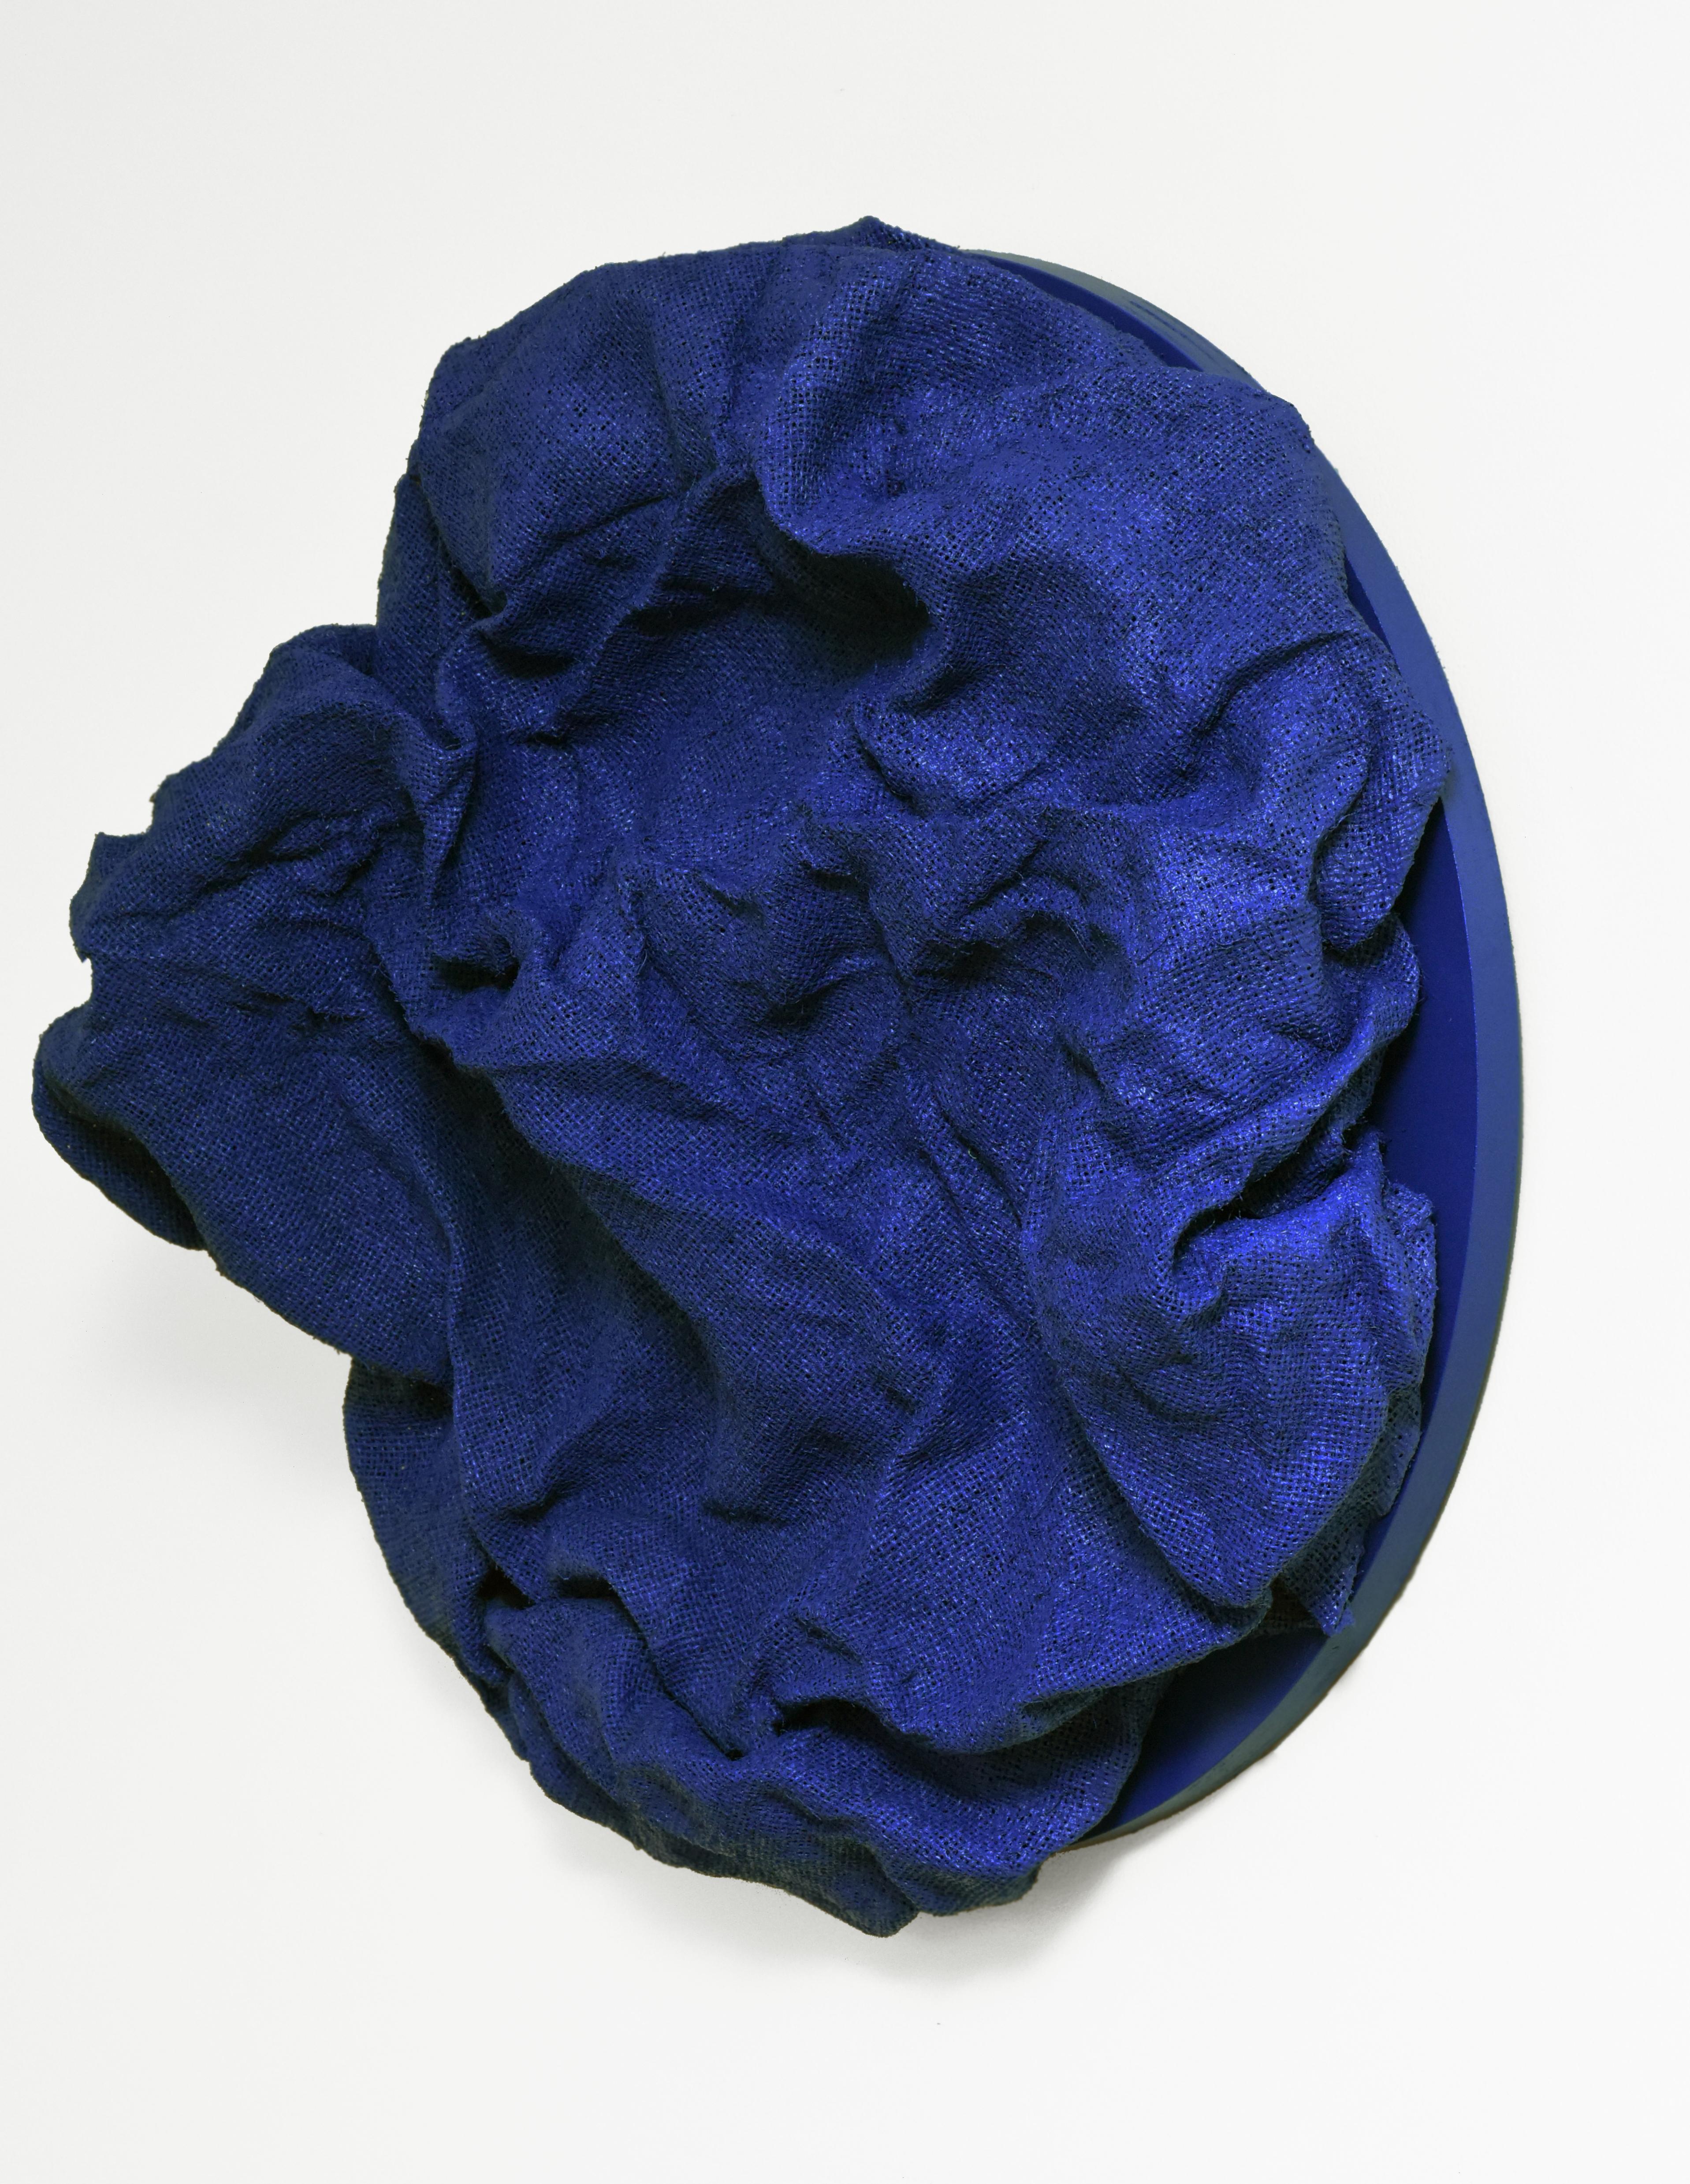 Fliesen in Marineblau (Marineblau, Dunkelblau, Hartstoff, zeitgenössisches Design, Textil – Sculpture von Chloe Hedden